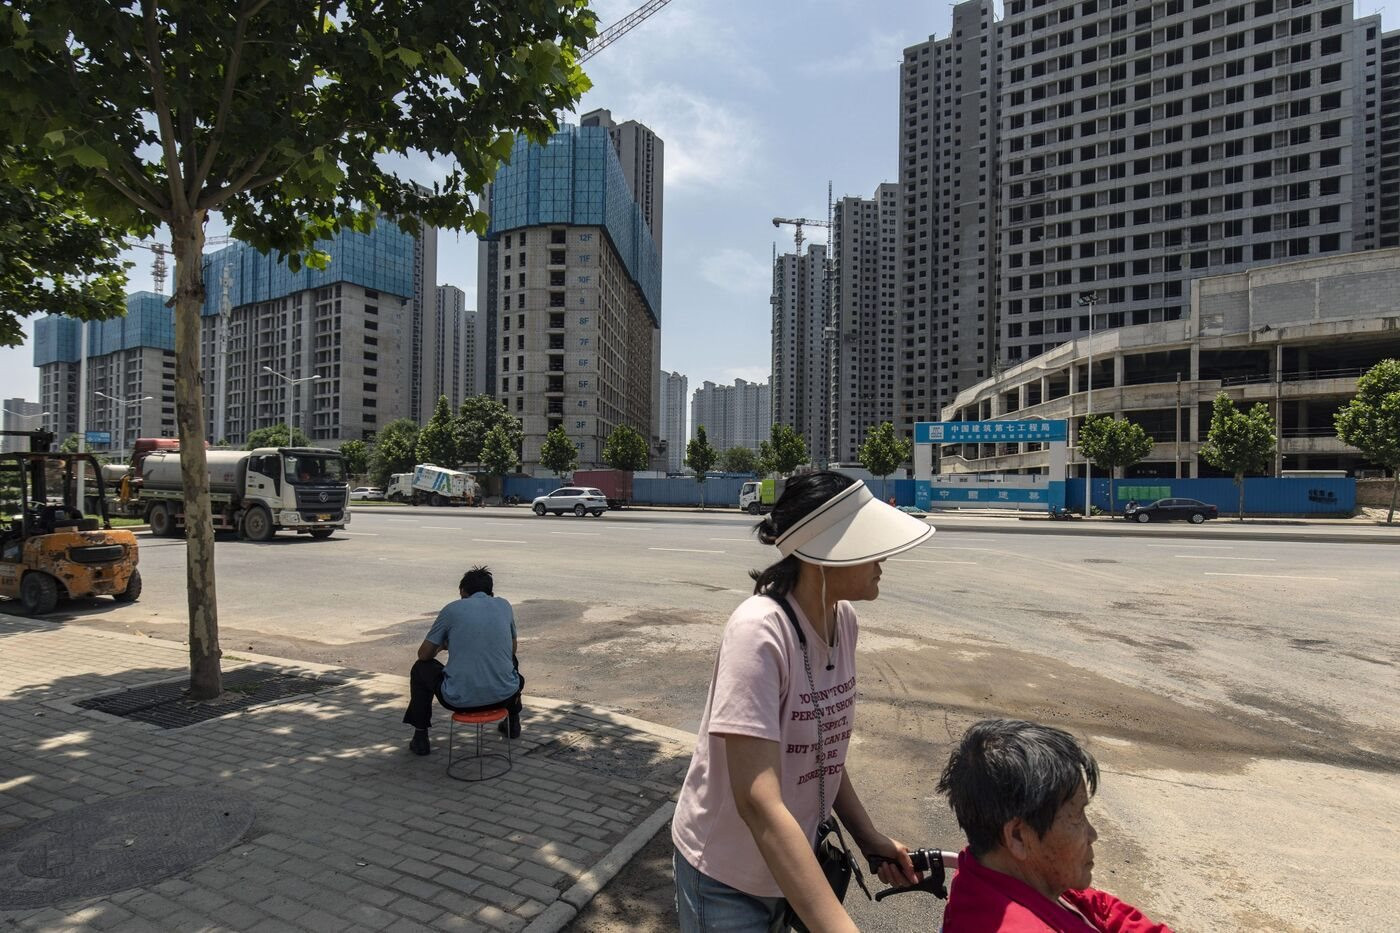 Trung Quốc bất ngờ hạ lãi suất, sắp tung gói kích thích 'khổng lồ' để cứu ngành bất động sản, vực dậy nền kinh tế - Ảnh 1.